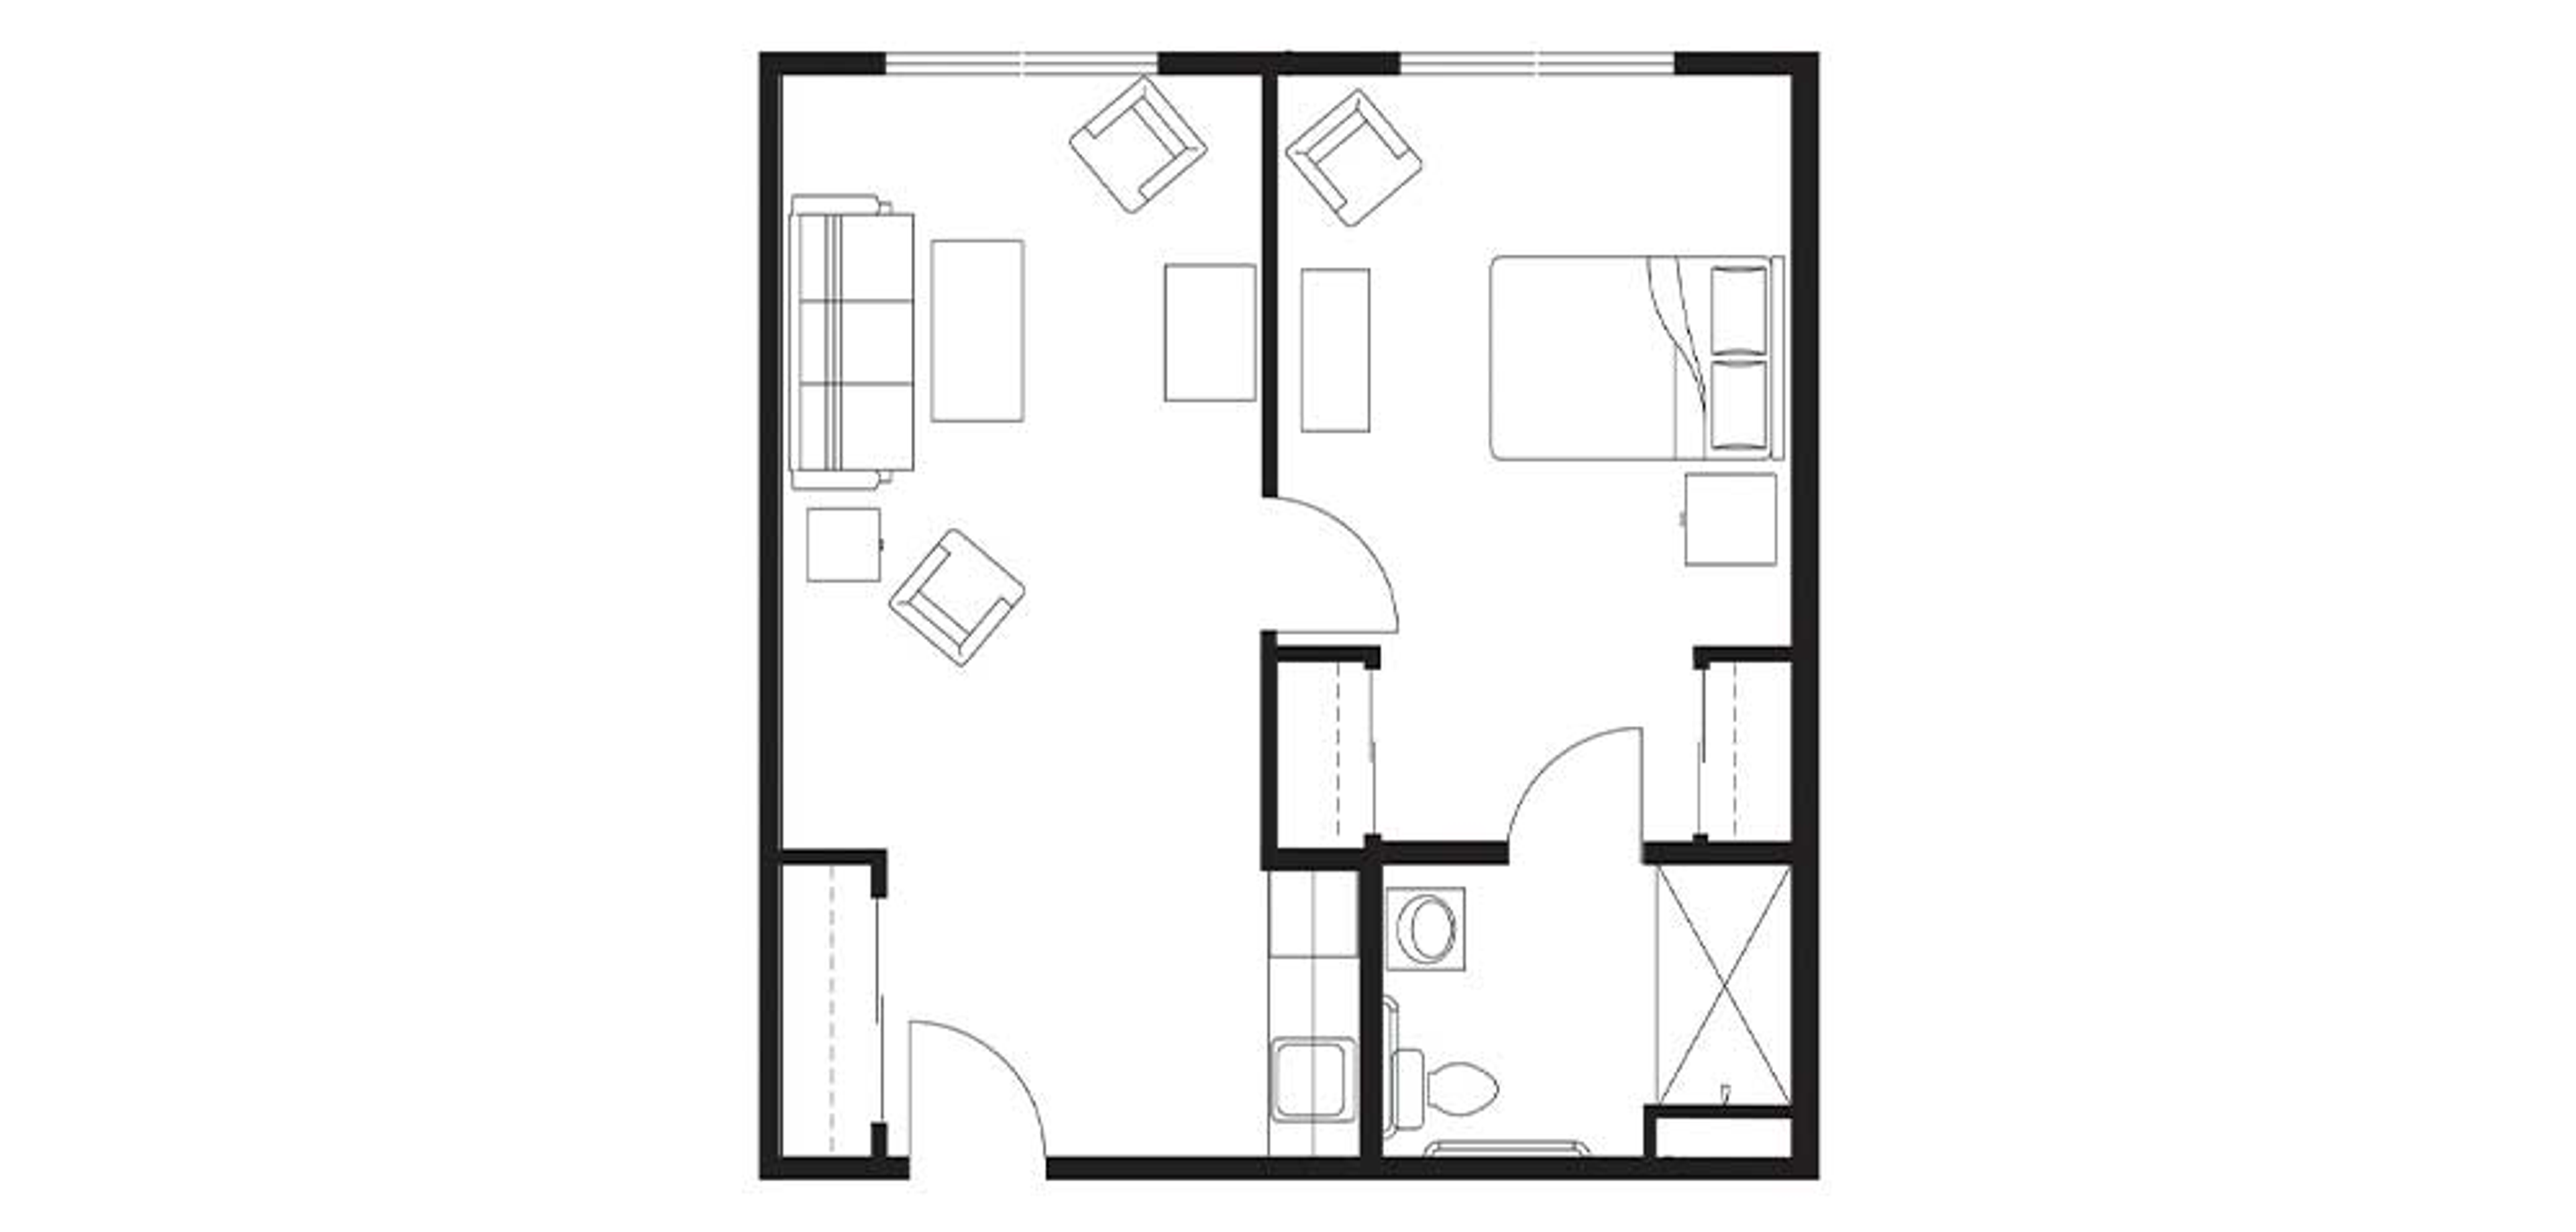 Floorplan Ocean Ridge Assisted Living One Bedroom